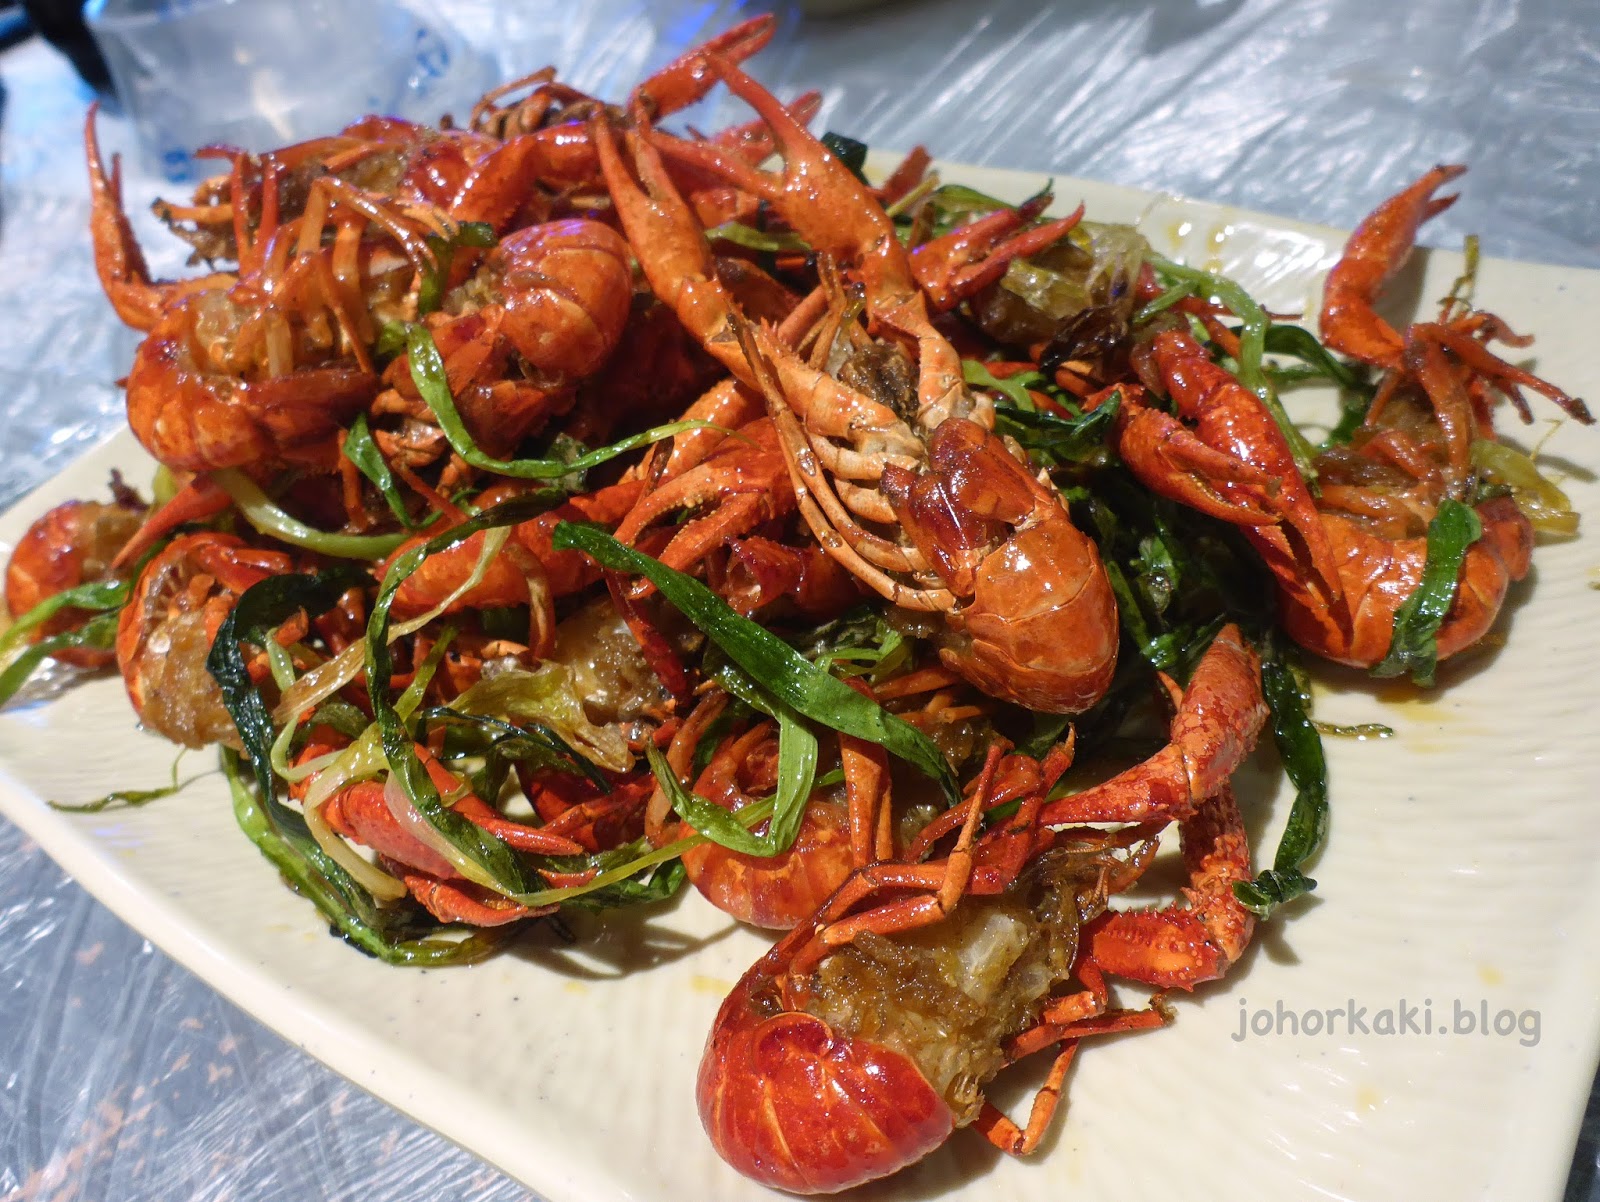 Bali Lobster Delicious in Crayfish Crazy Wuhan. Food 巴厘龙虾(万松园) |Johor